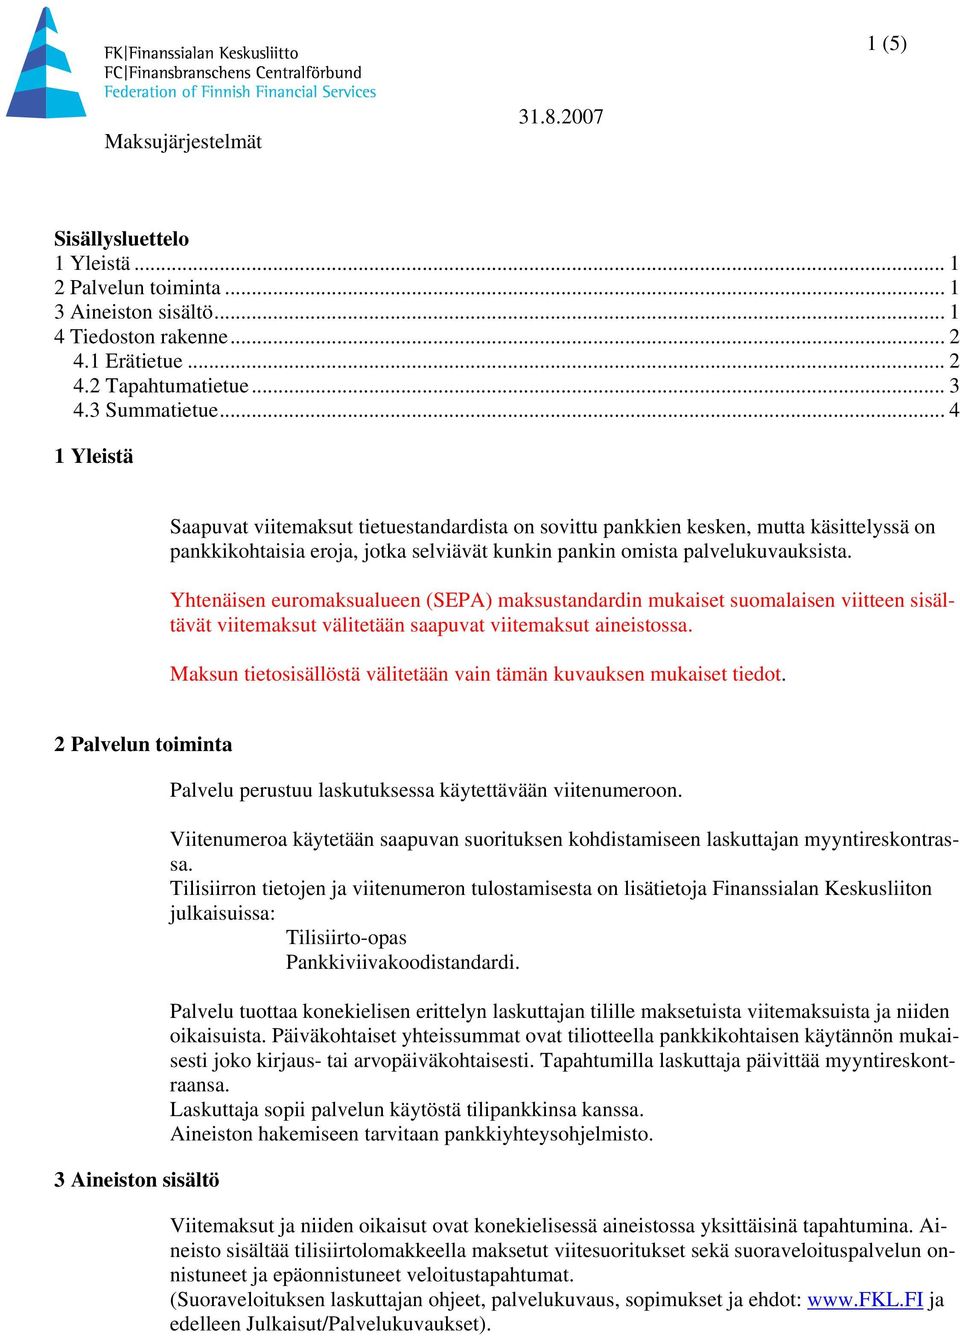 Yhtenäisen euromaksualueen (SEPA) maksustandardin mukaiset suomalaisen viitteen sisältävät viitemaksut välitetään saapuvat viitemaksut aineistossa.